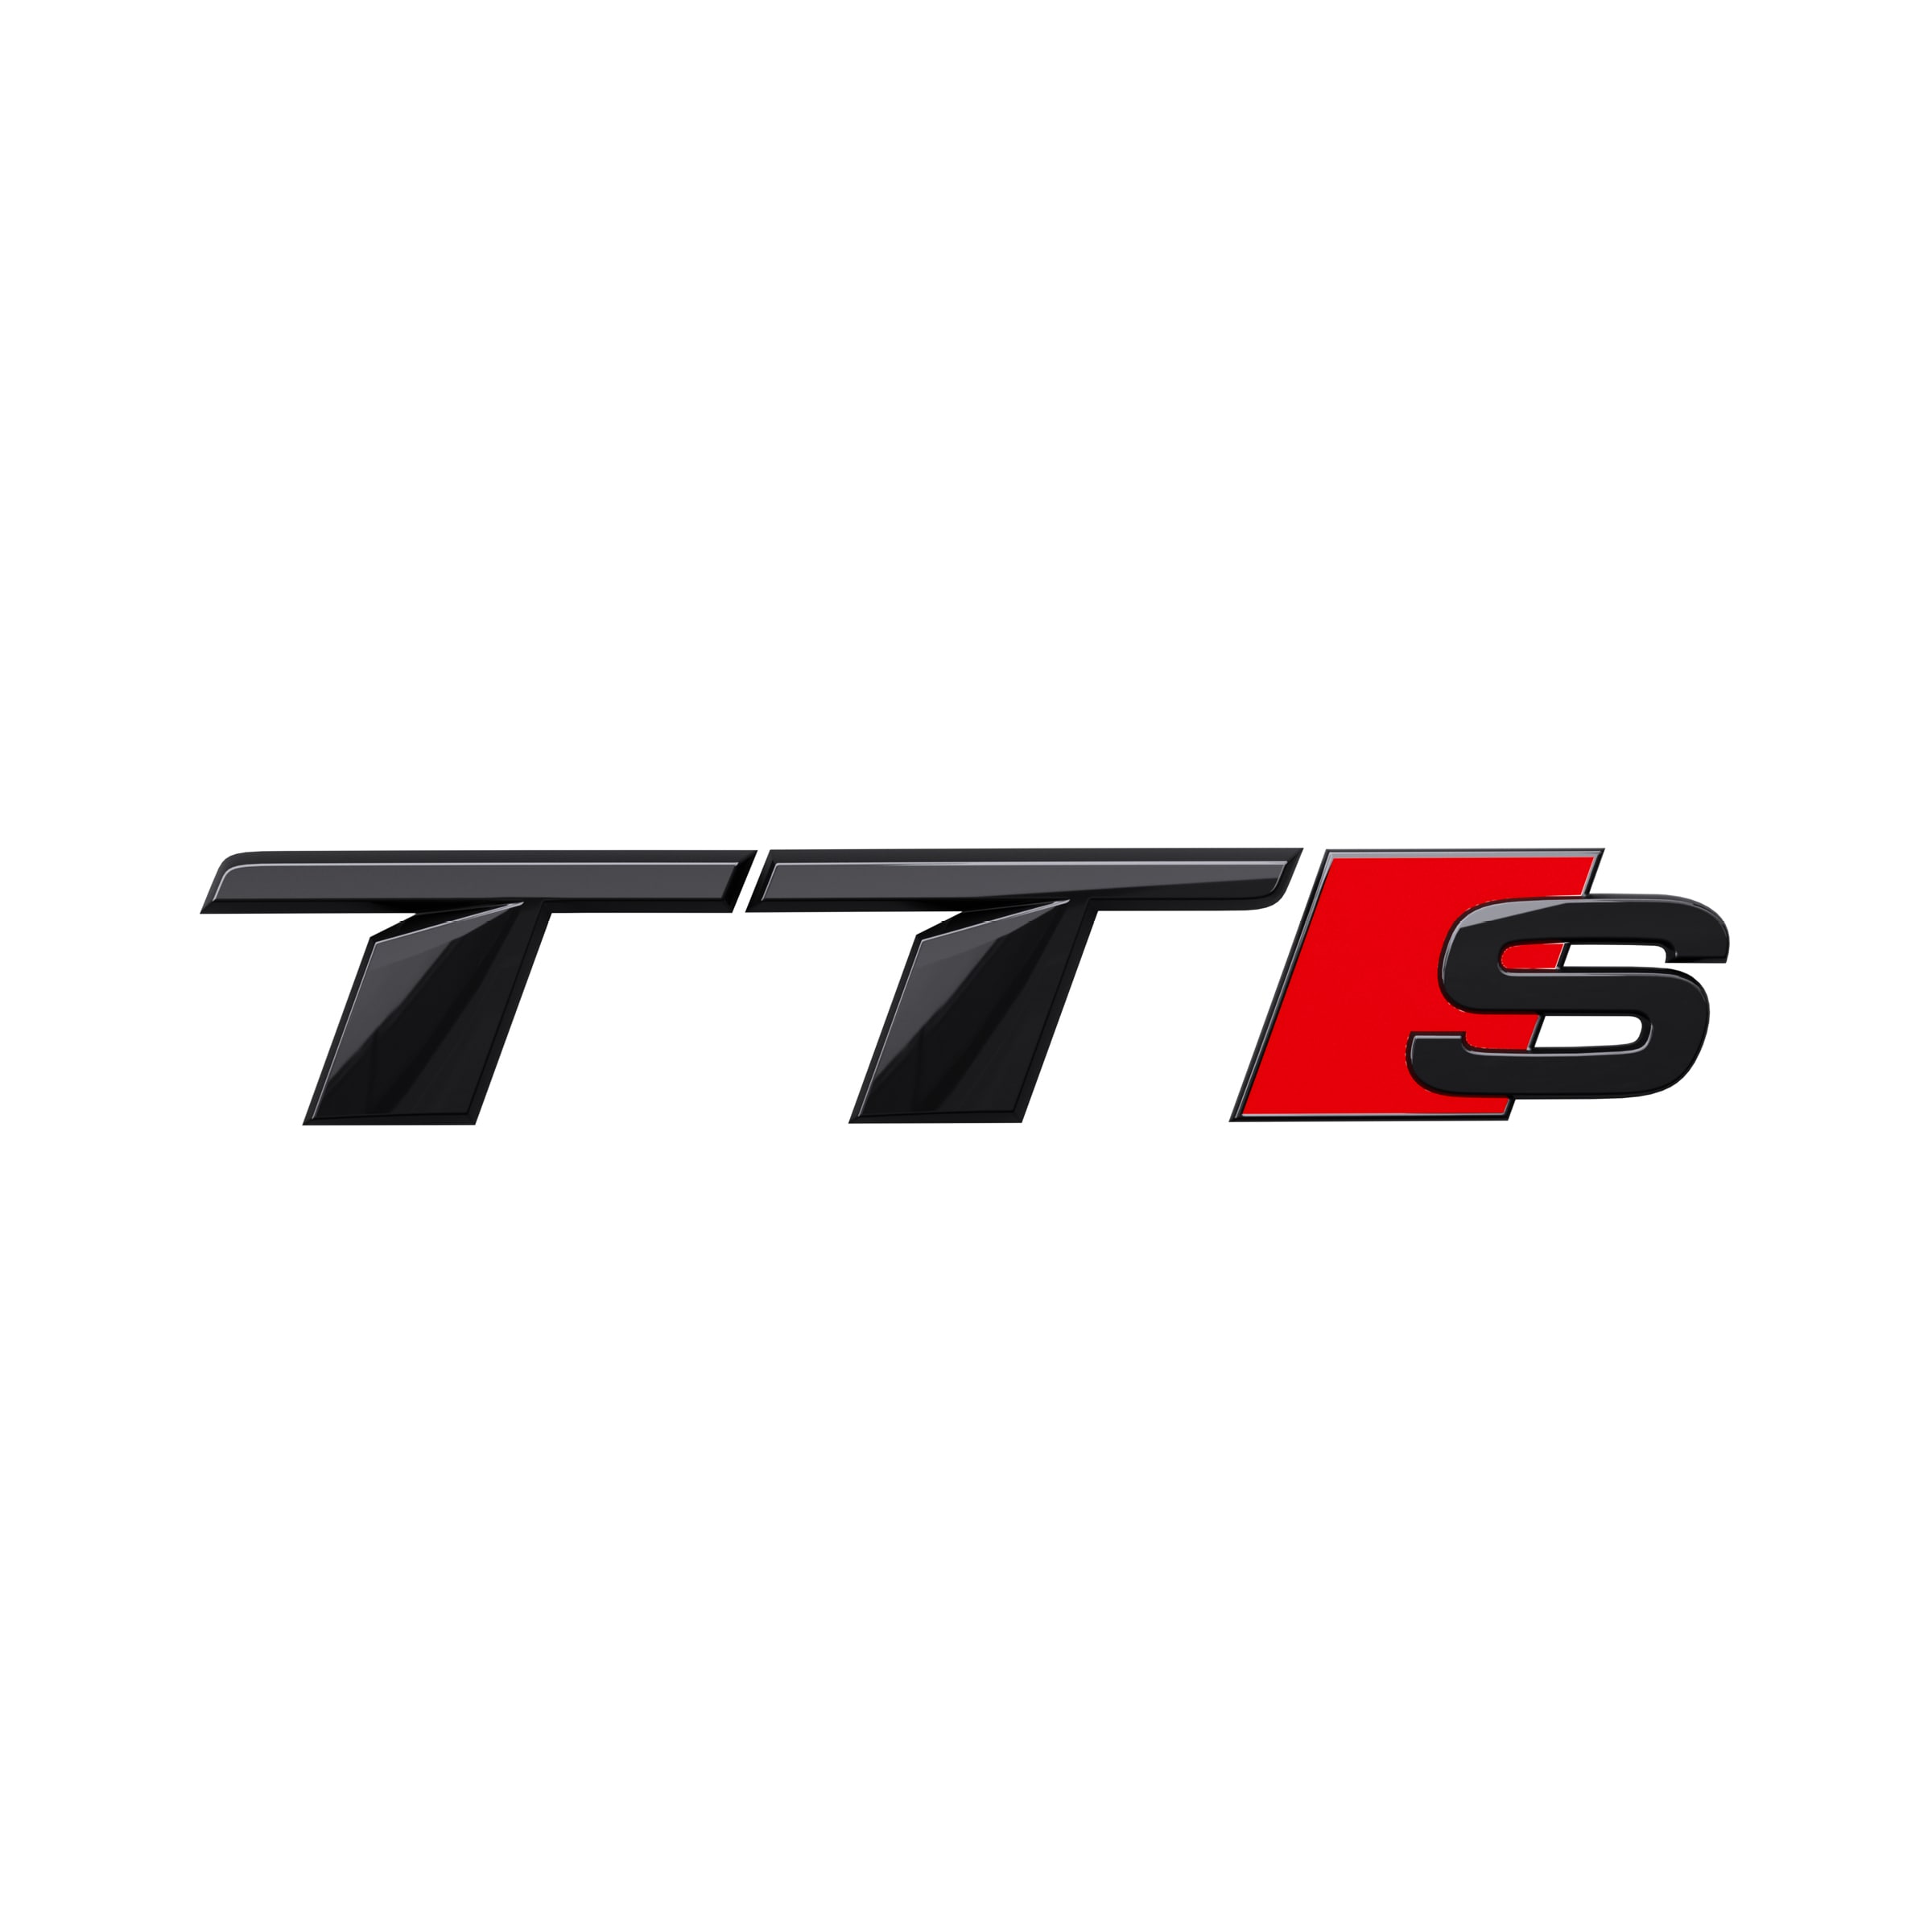 Modellbezeichnung TTS in Schwarz